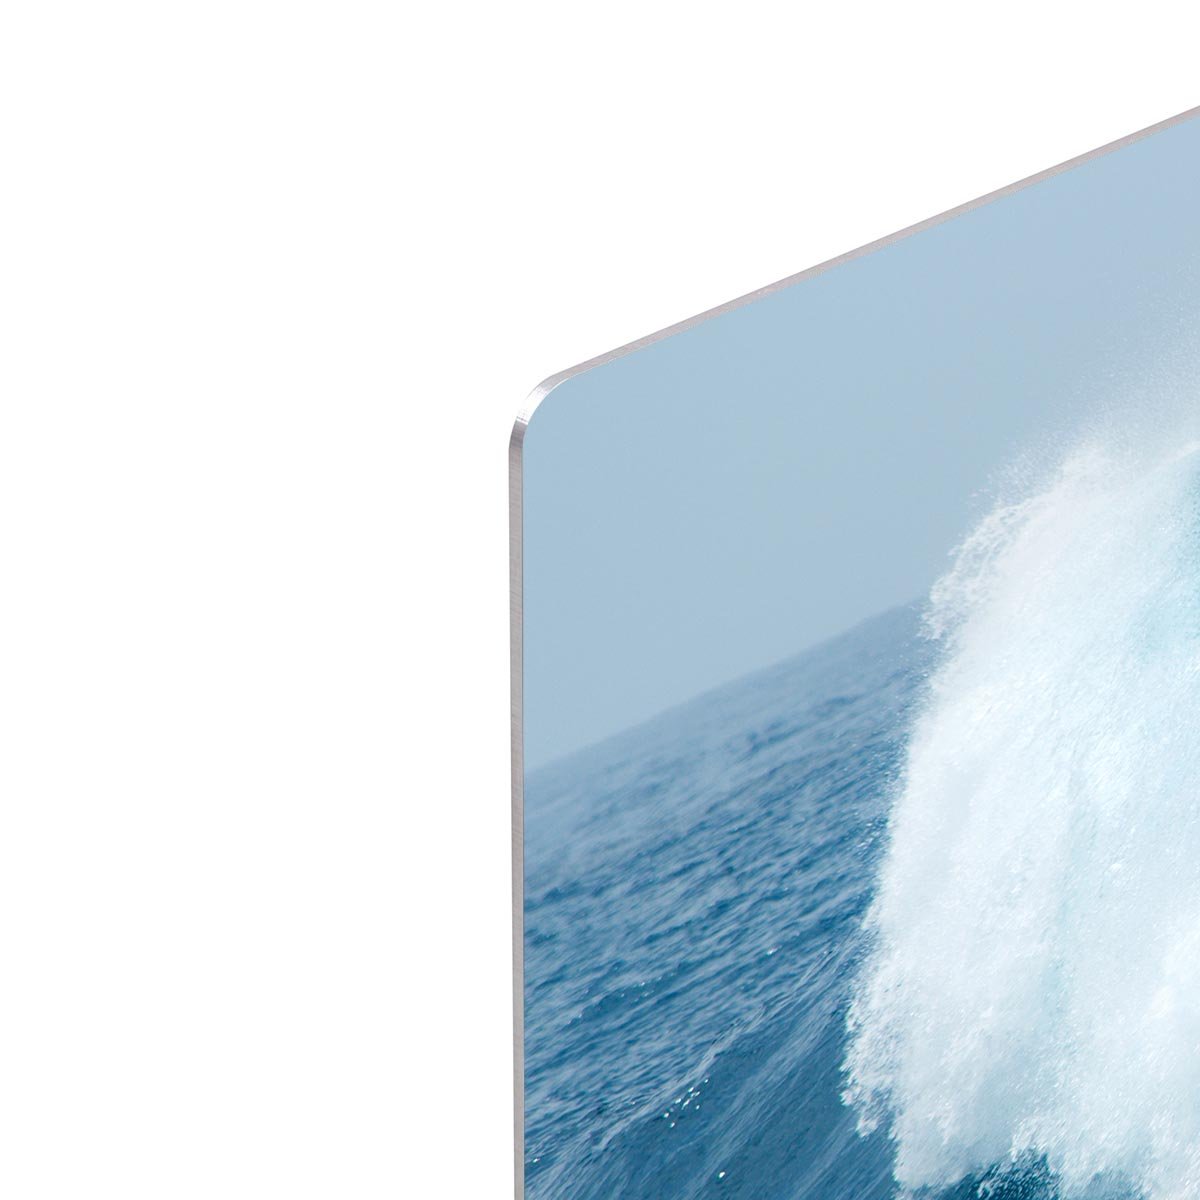 Ocean waves breaking natural HD Metal Print